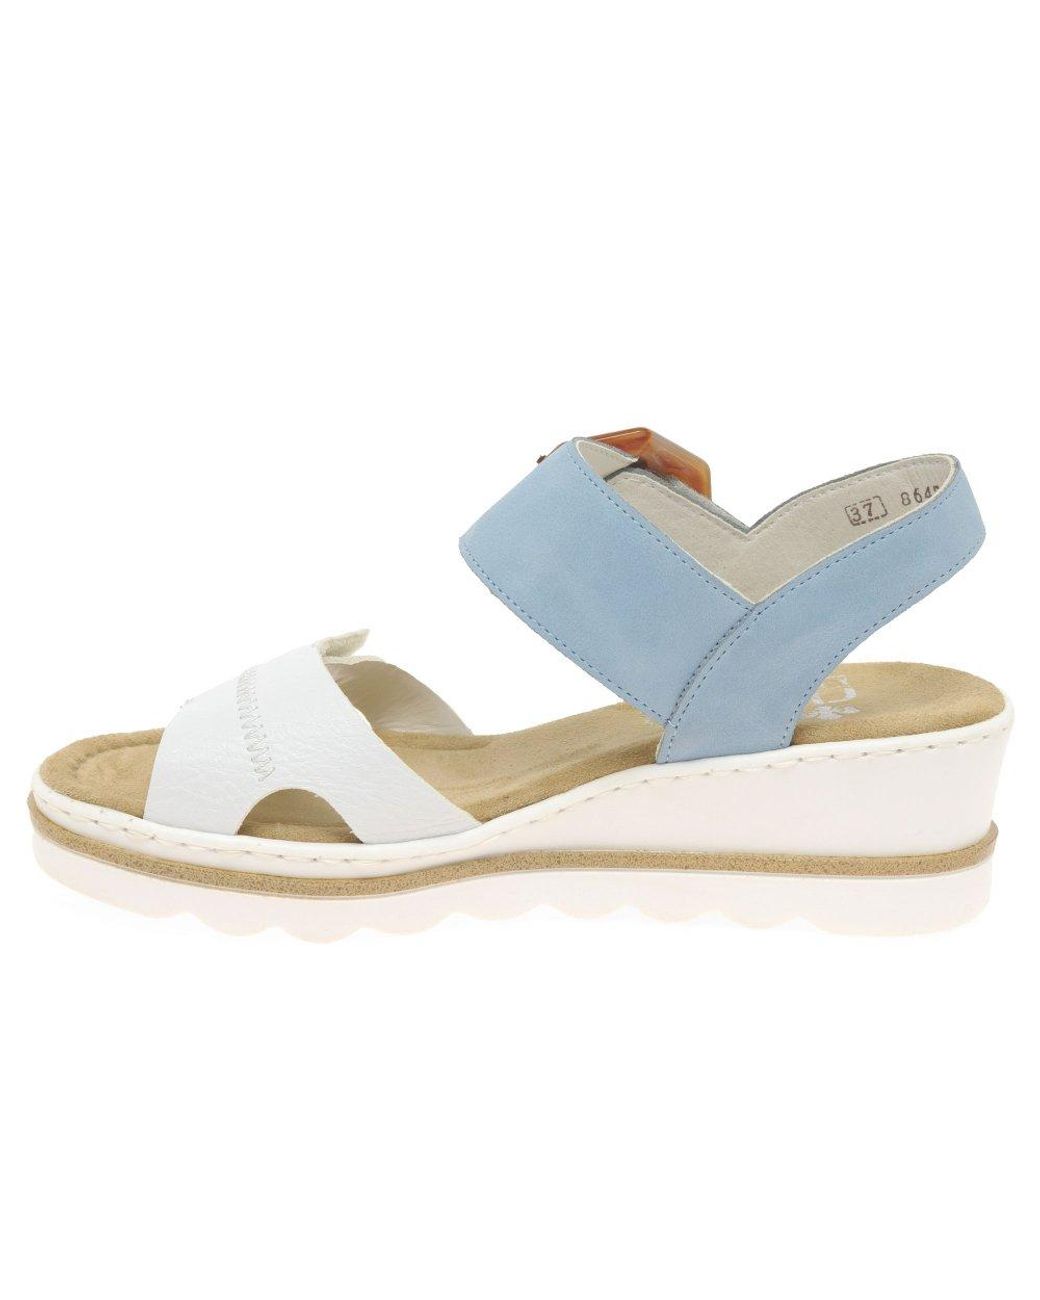 Rieker Jena Wedge Heel Sandals in White/Light Blue (Blue) | Lyst Canada